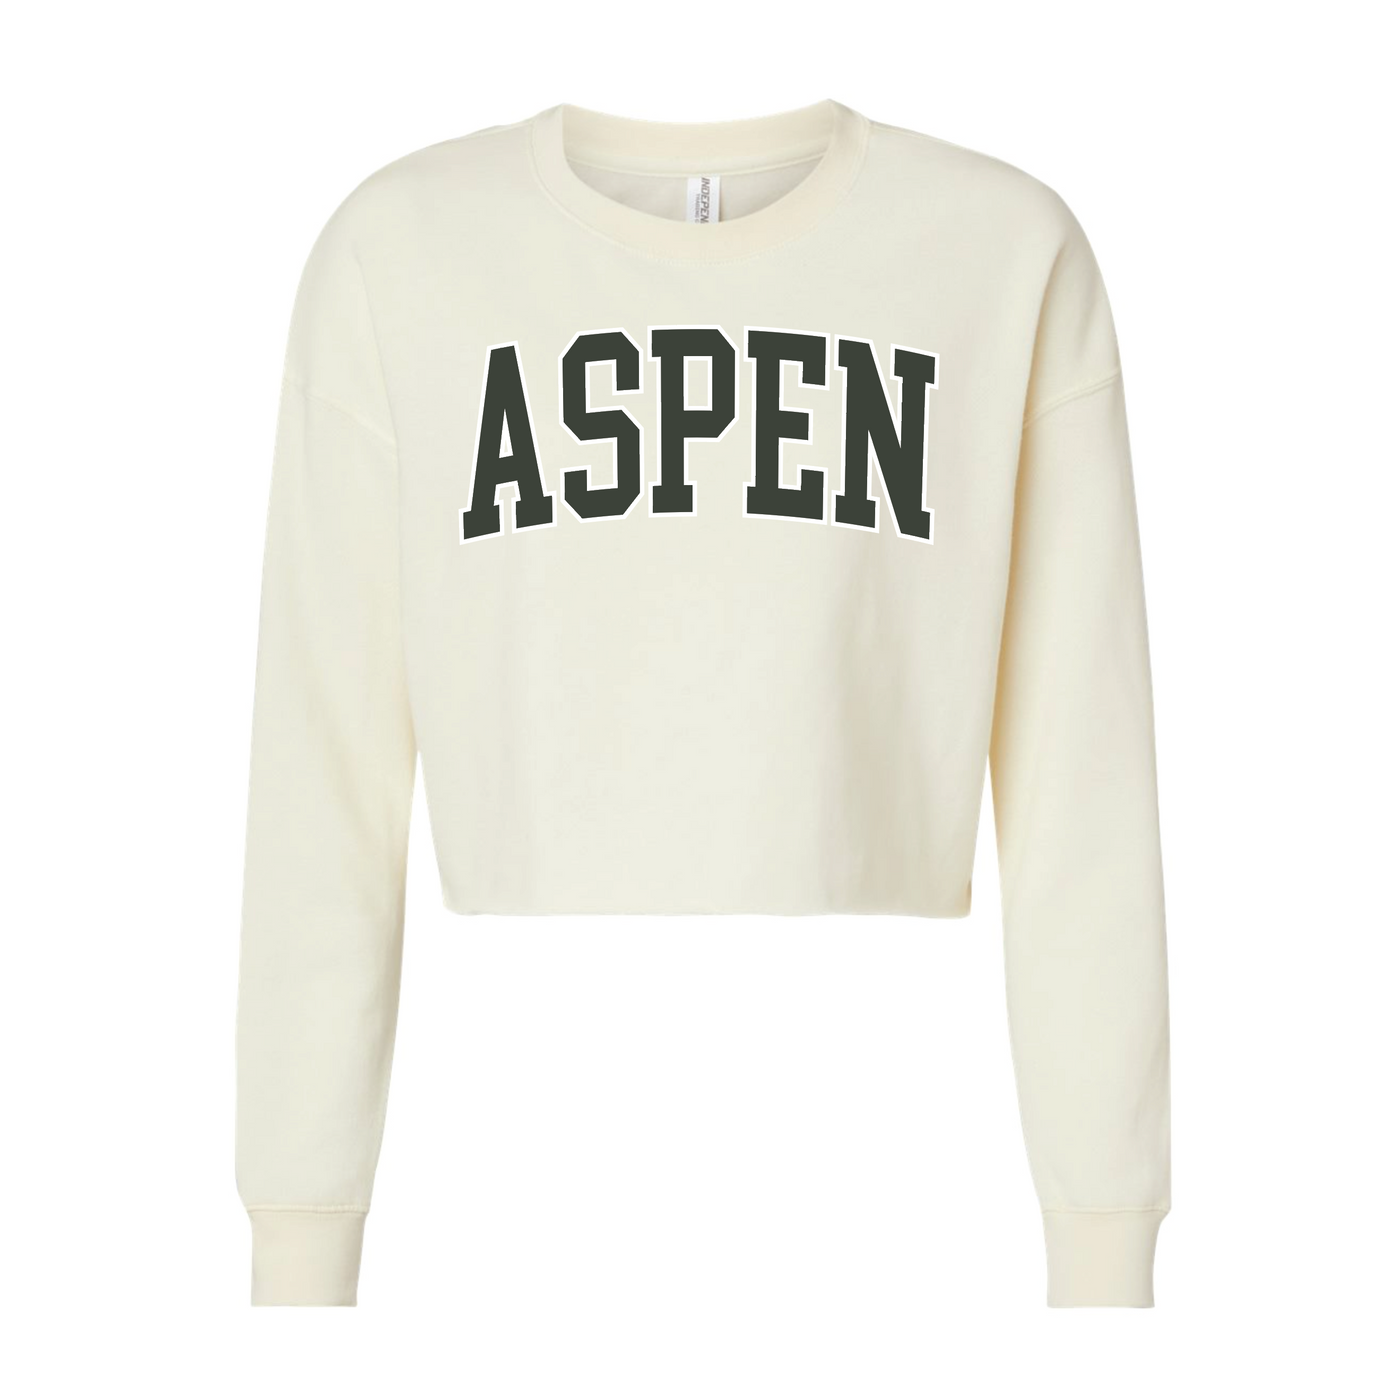 Aspen Crop Top Sweatshirt